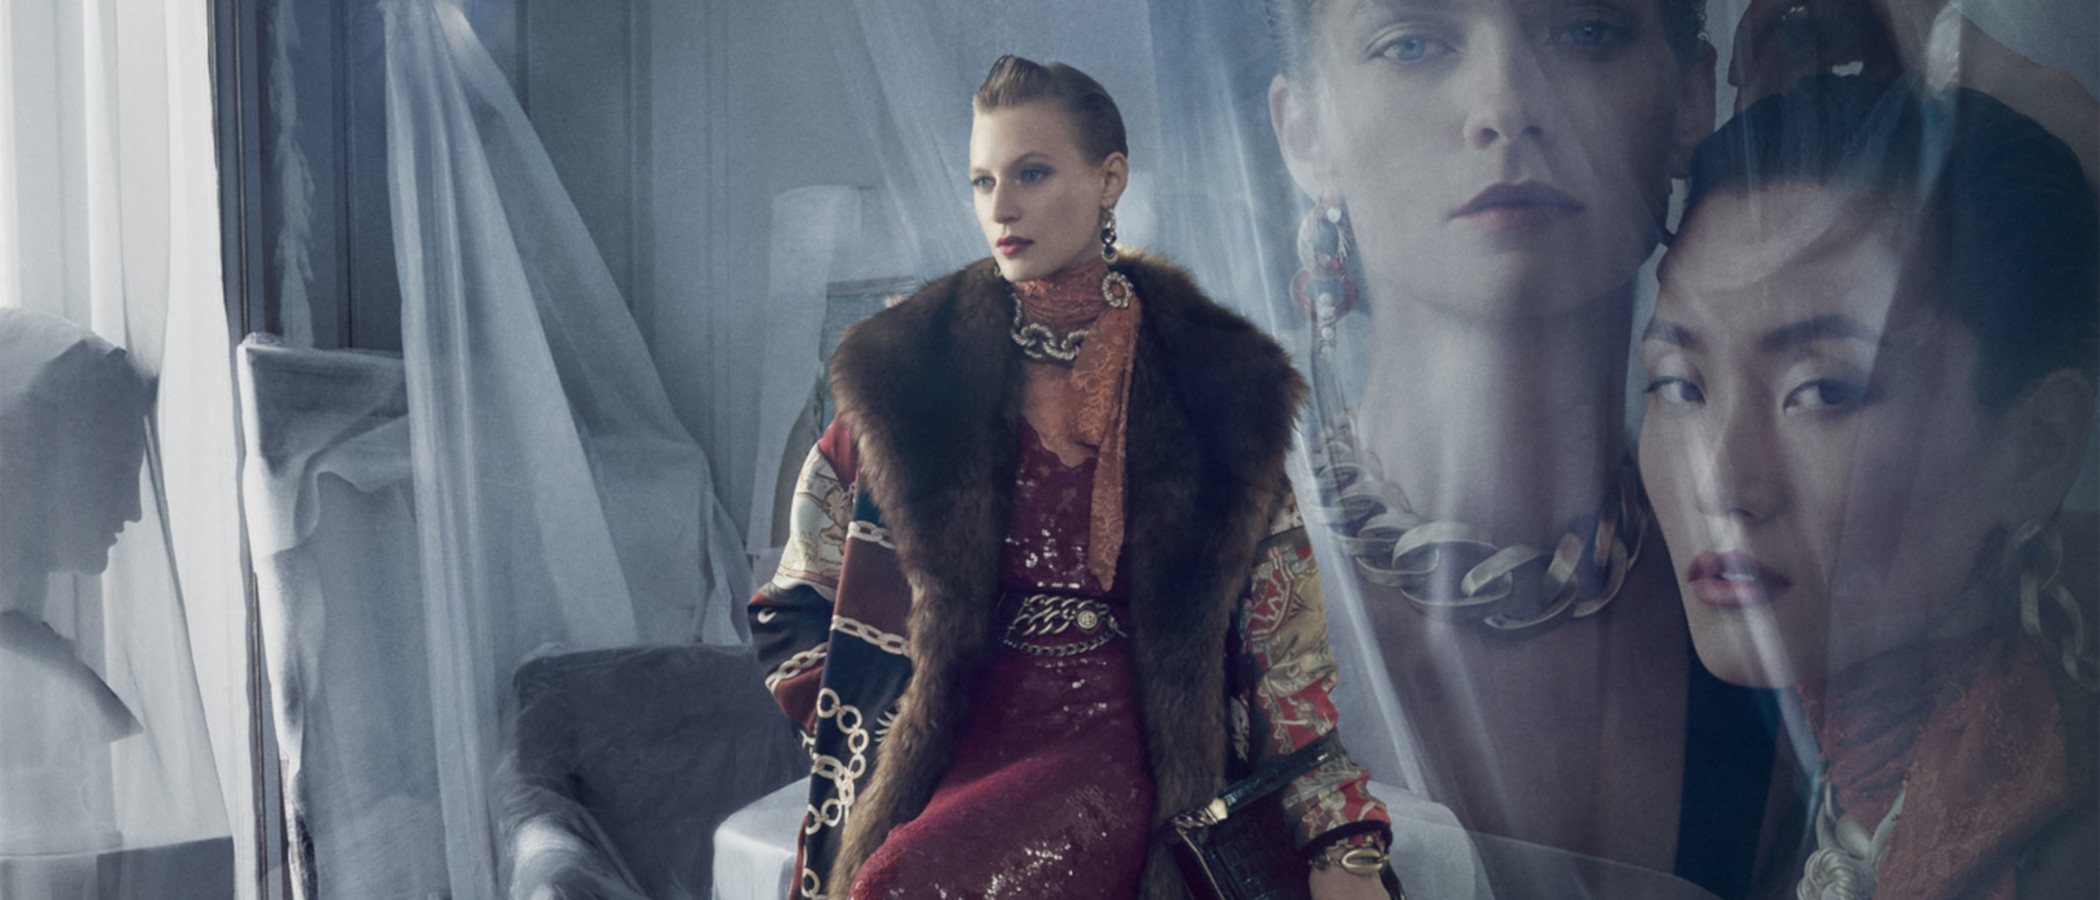 Zara llena su colección otoño 2019 de una enigmática elegancia sin precedentes